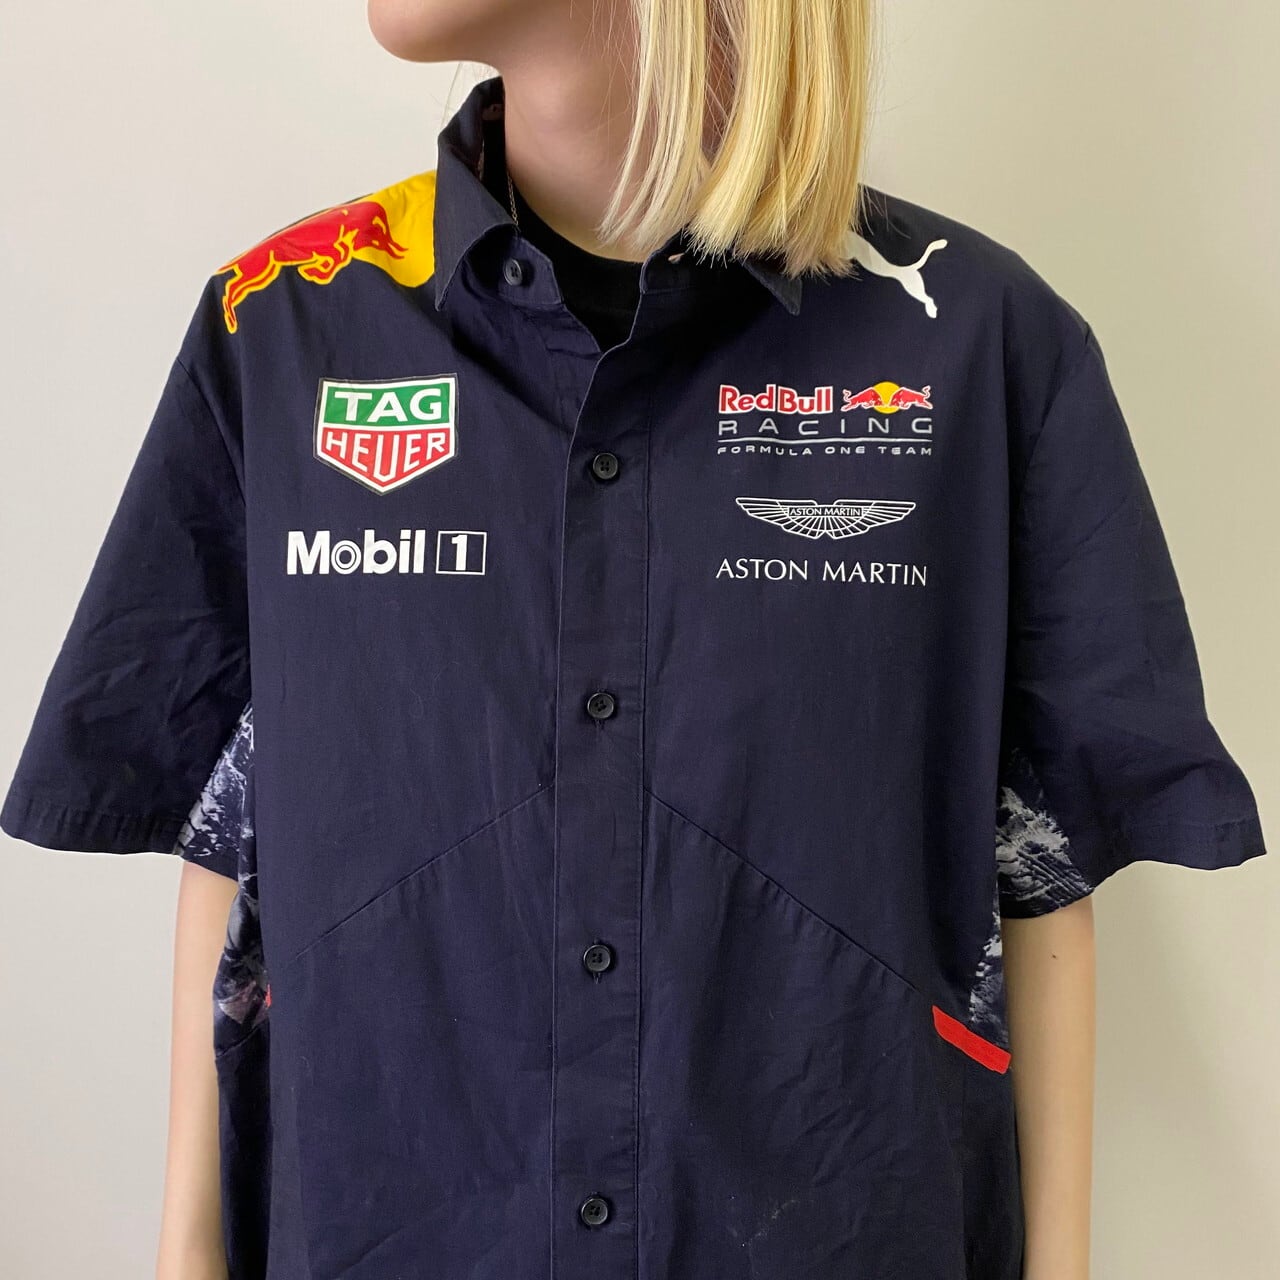 PUMA ポロシャツ ASTON MARTIN Red Bull レーシング-